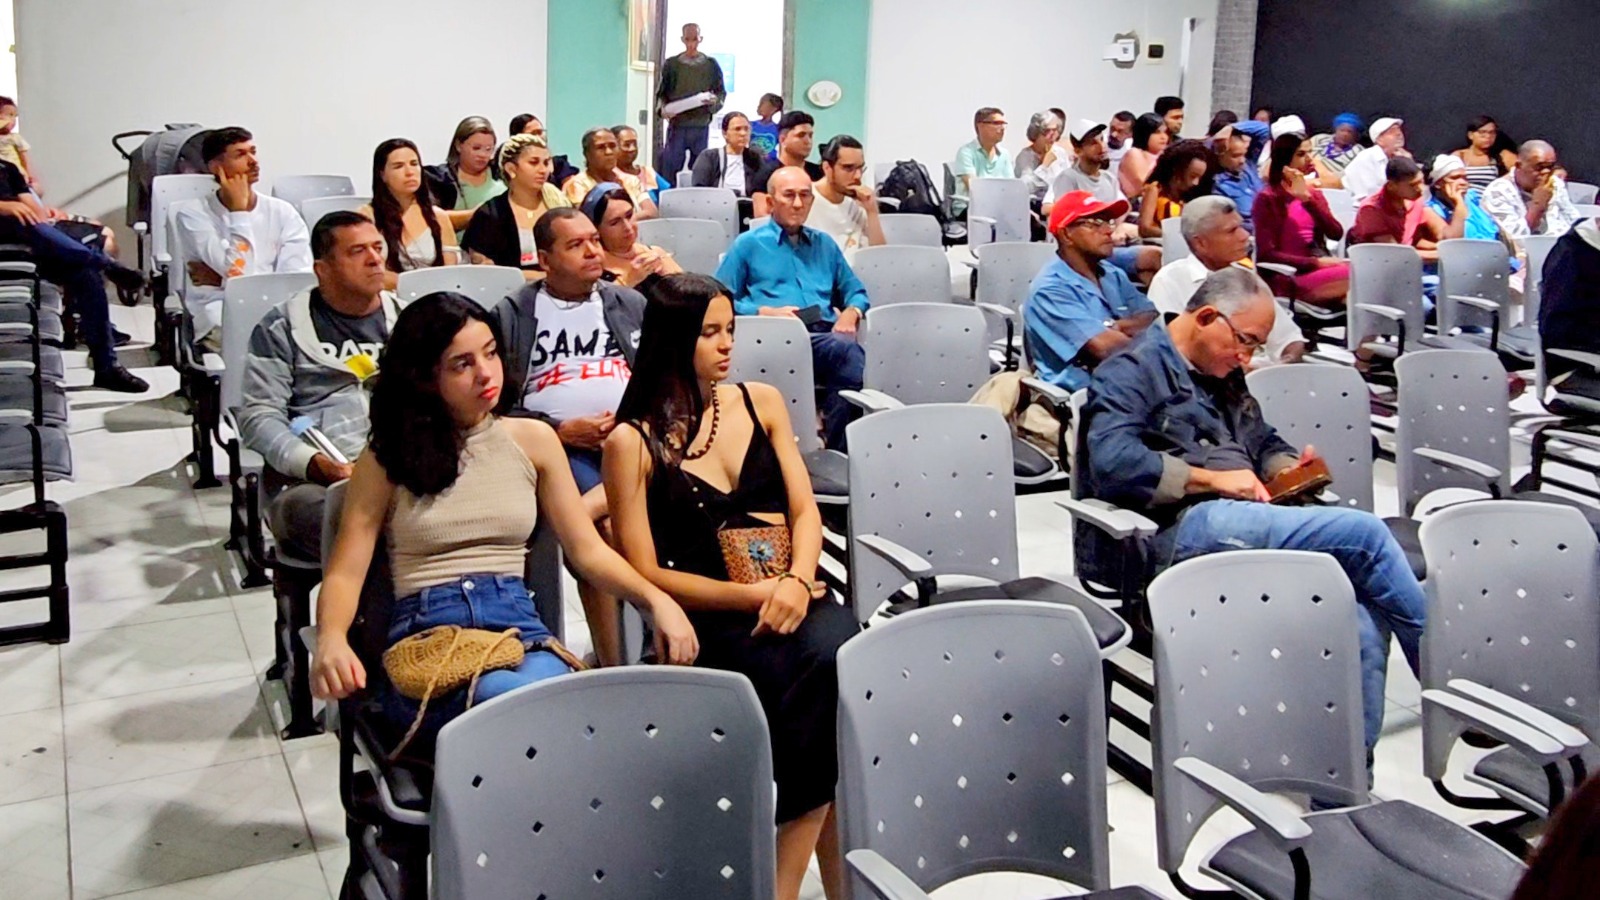 Prefeitura realiza audiência para debater políticas públicas culturais